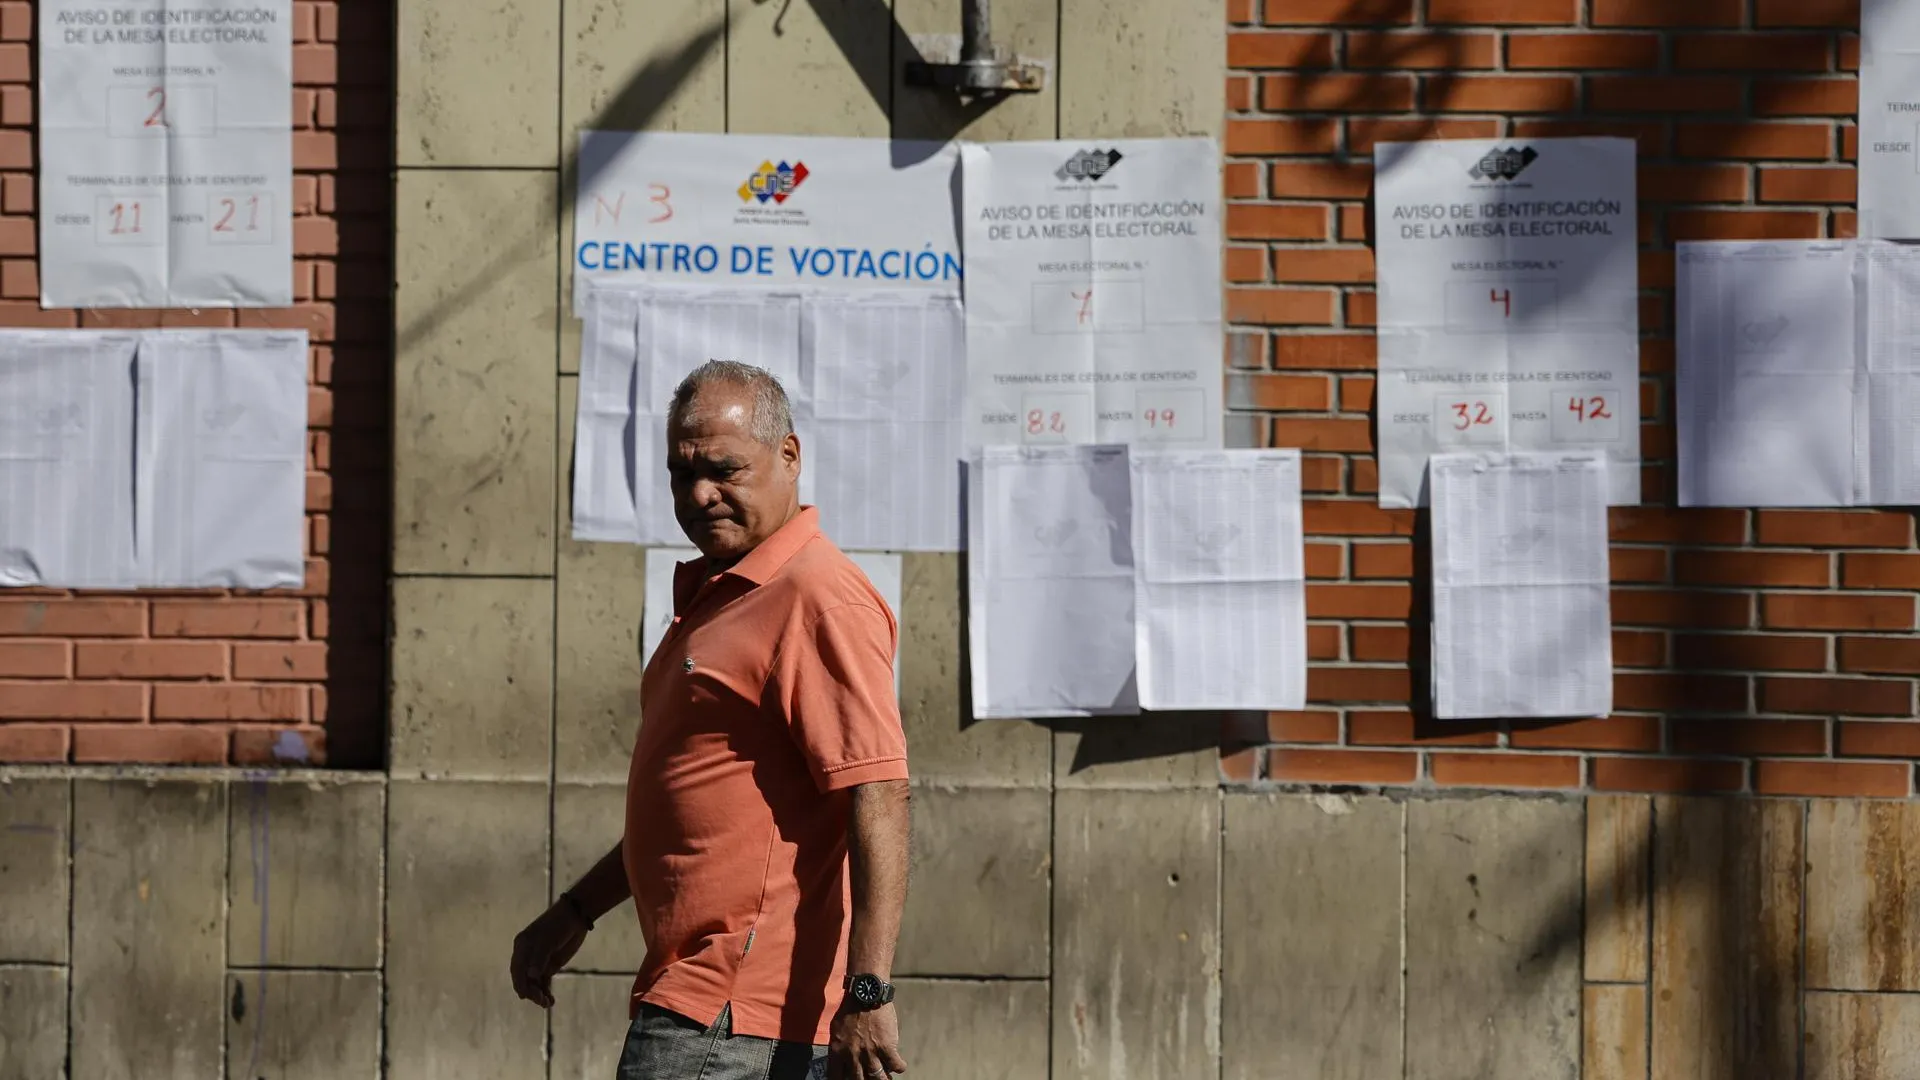 Надпись на плакате за мужчиной «Центр голосования» / Фото: Jesus Vargas